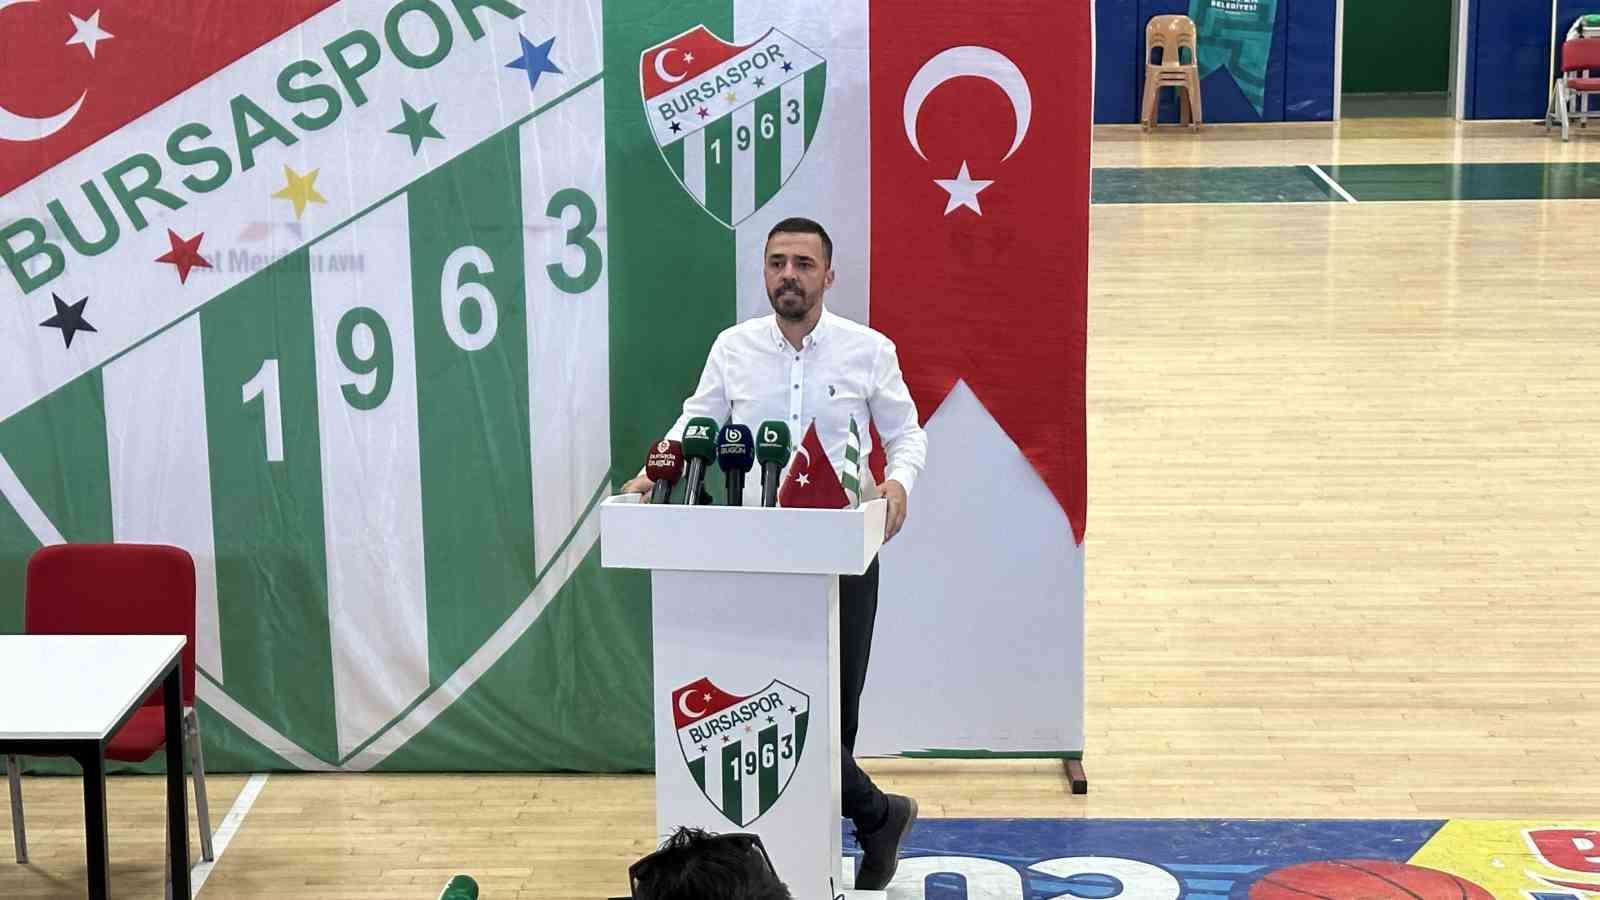 Bursaspor Basketbol’da Olağan İdari ve Mali Genel Kurul gerçekleşti